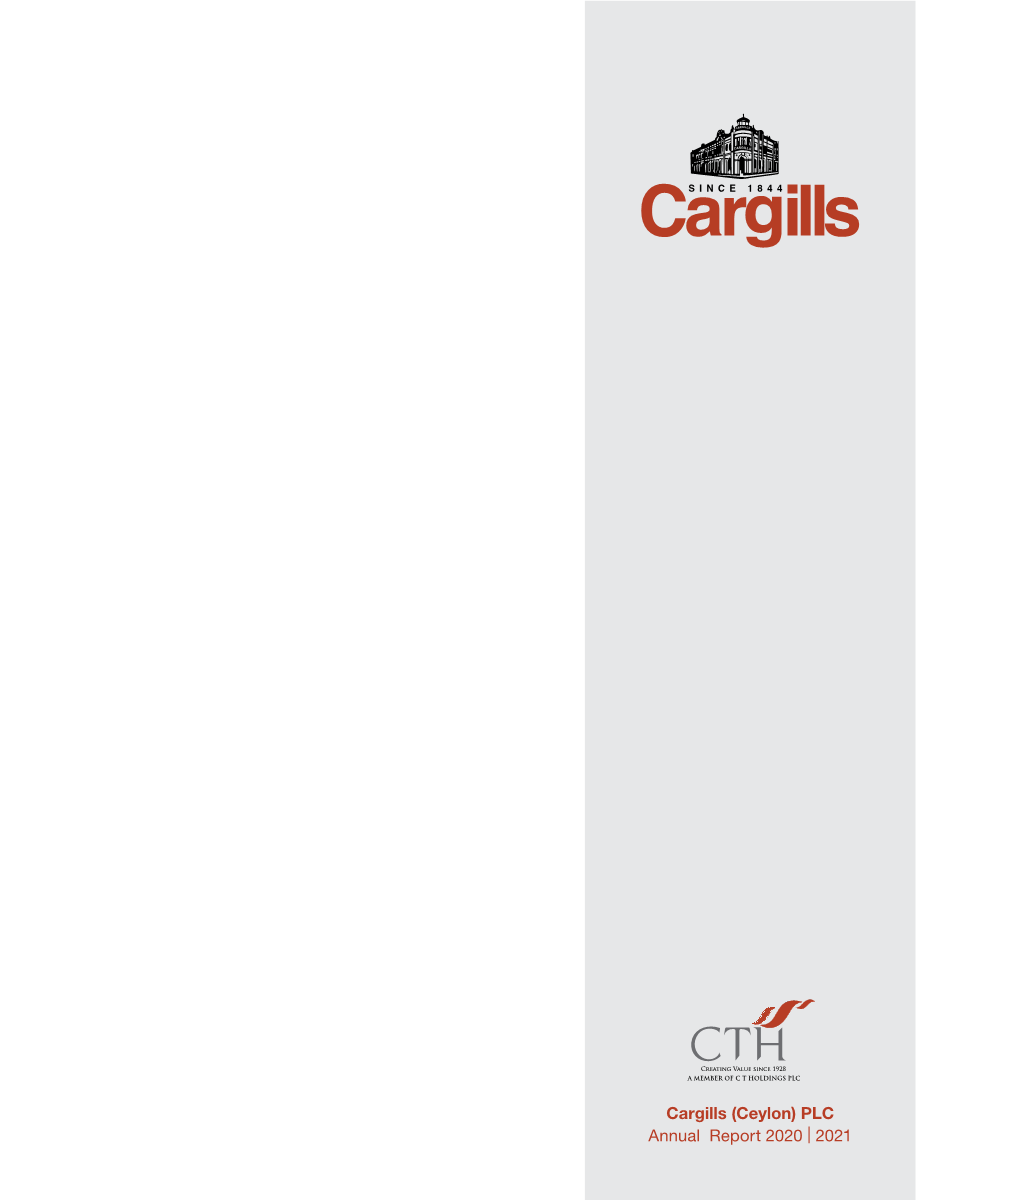 Cargills (Ceylon) PLC Annual Report 2020 | 2021 Contents